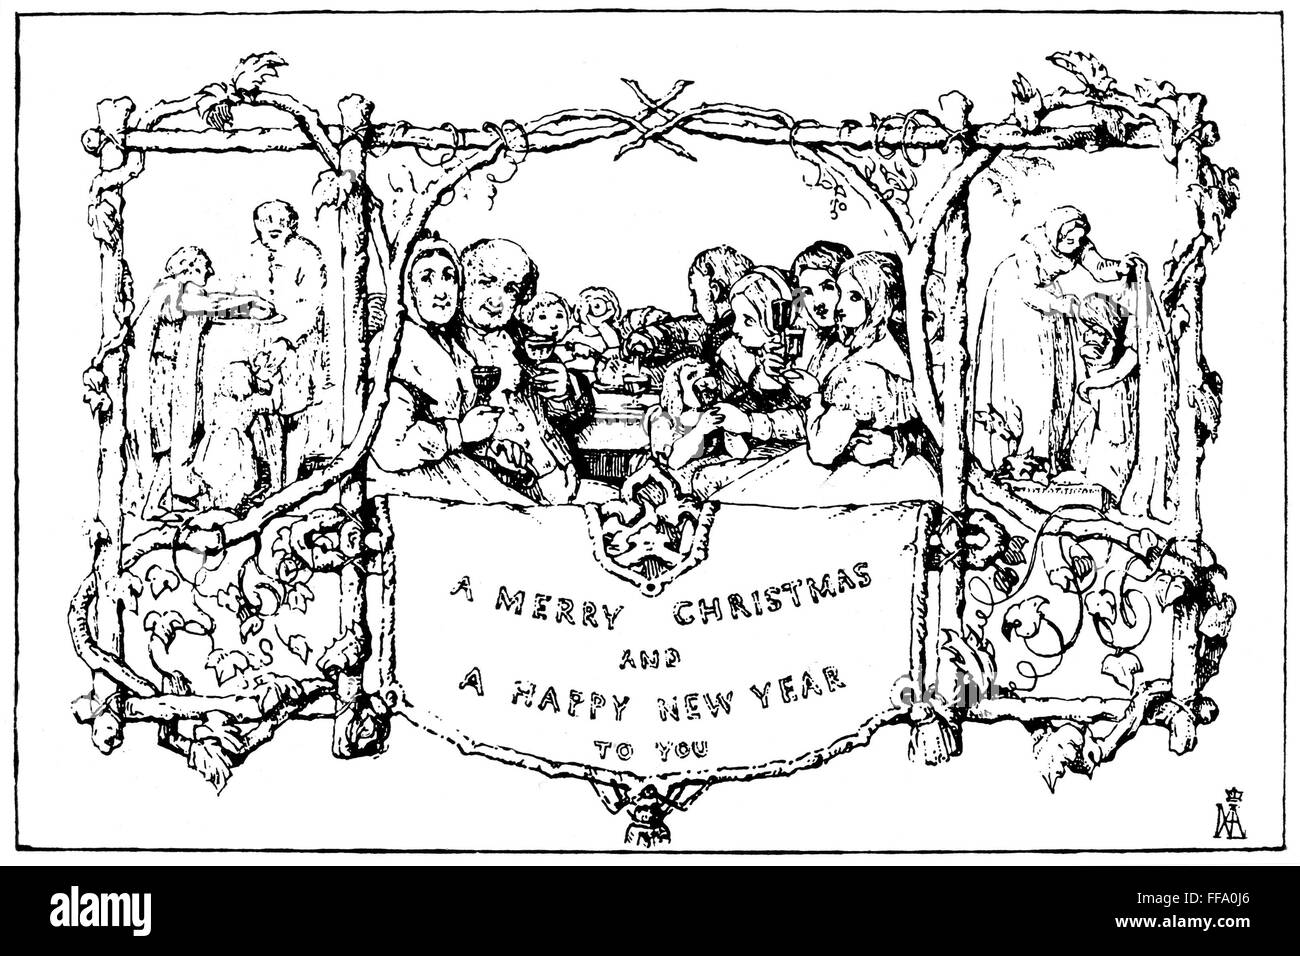 Carte de Noël, 1843. /Nla première carte de Noël, conçu pour Sir Henry Cole en 1843 par John Calcott Horsley, R.A. Banque D'Images